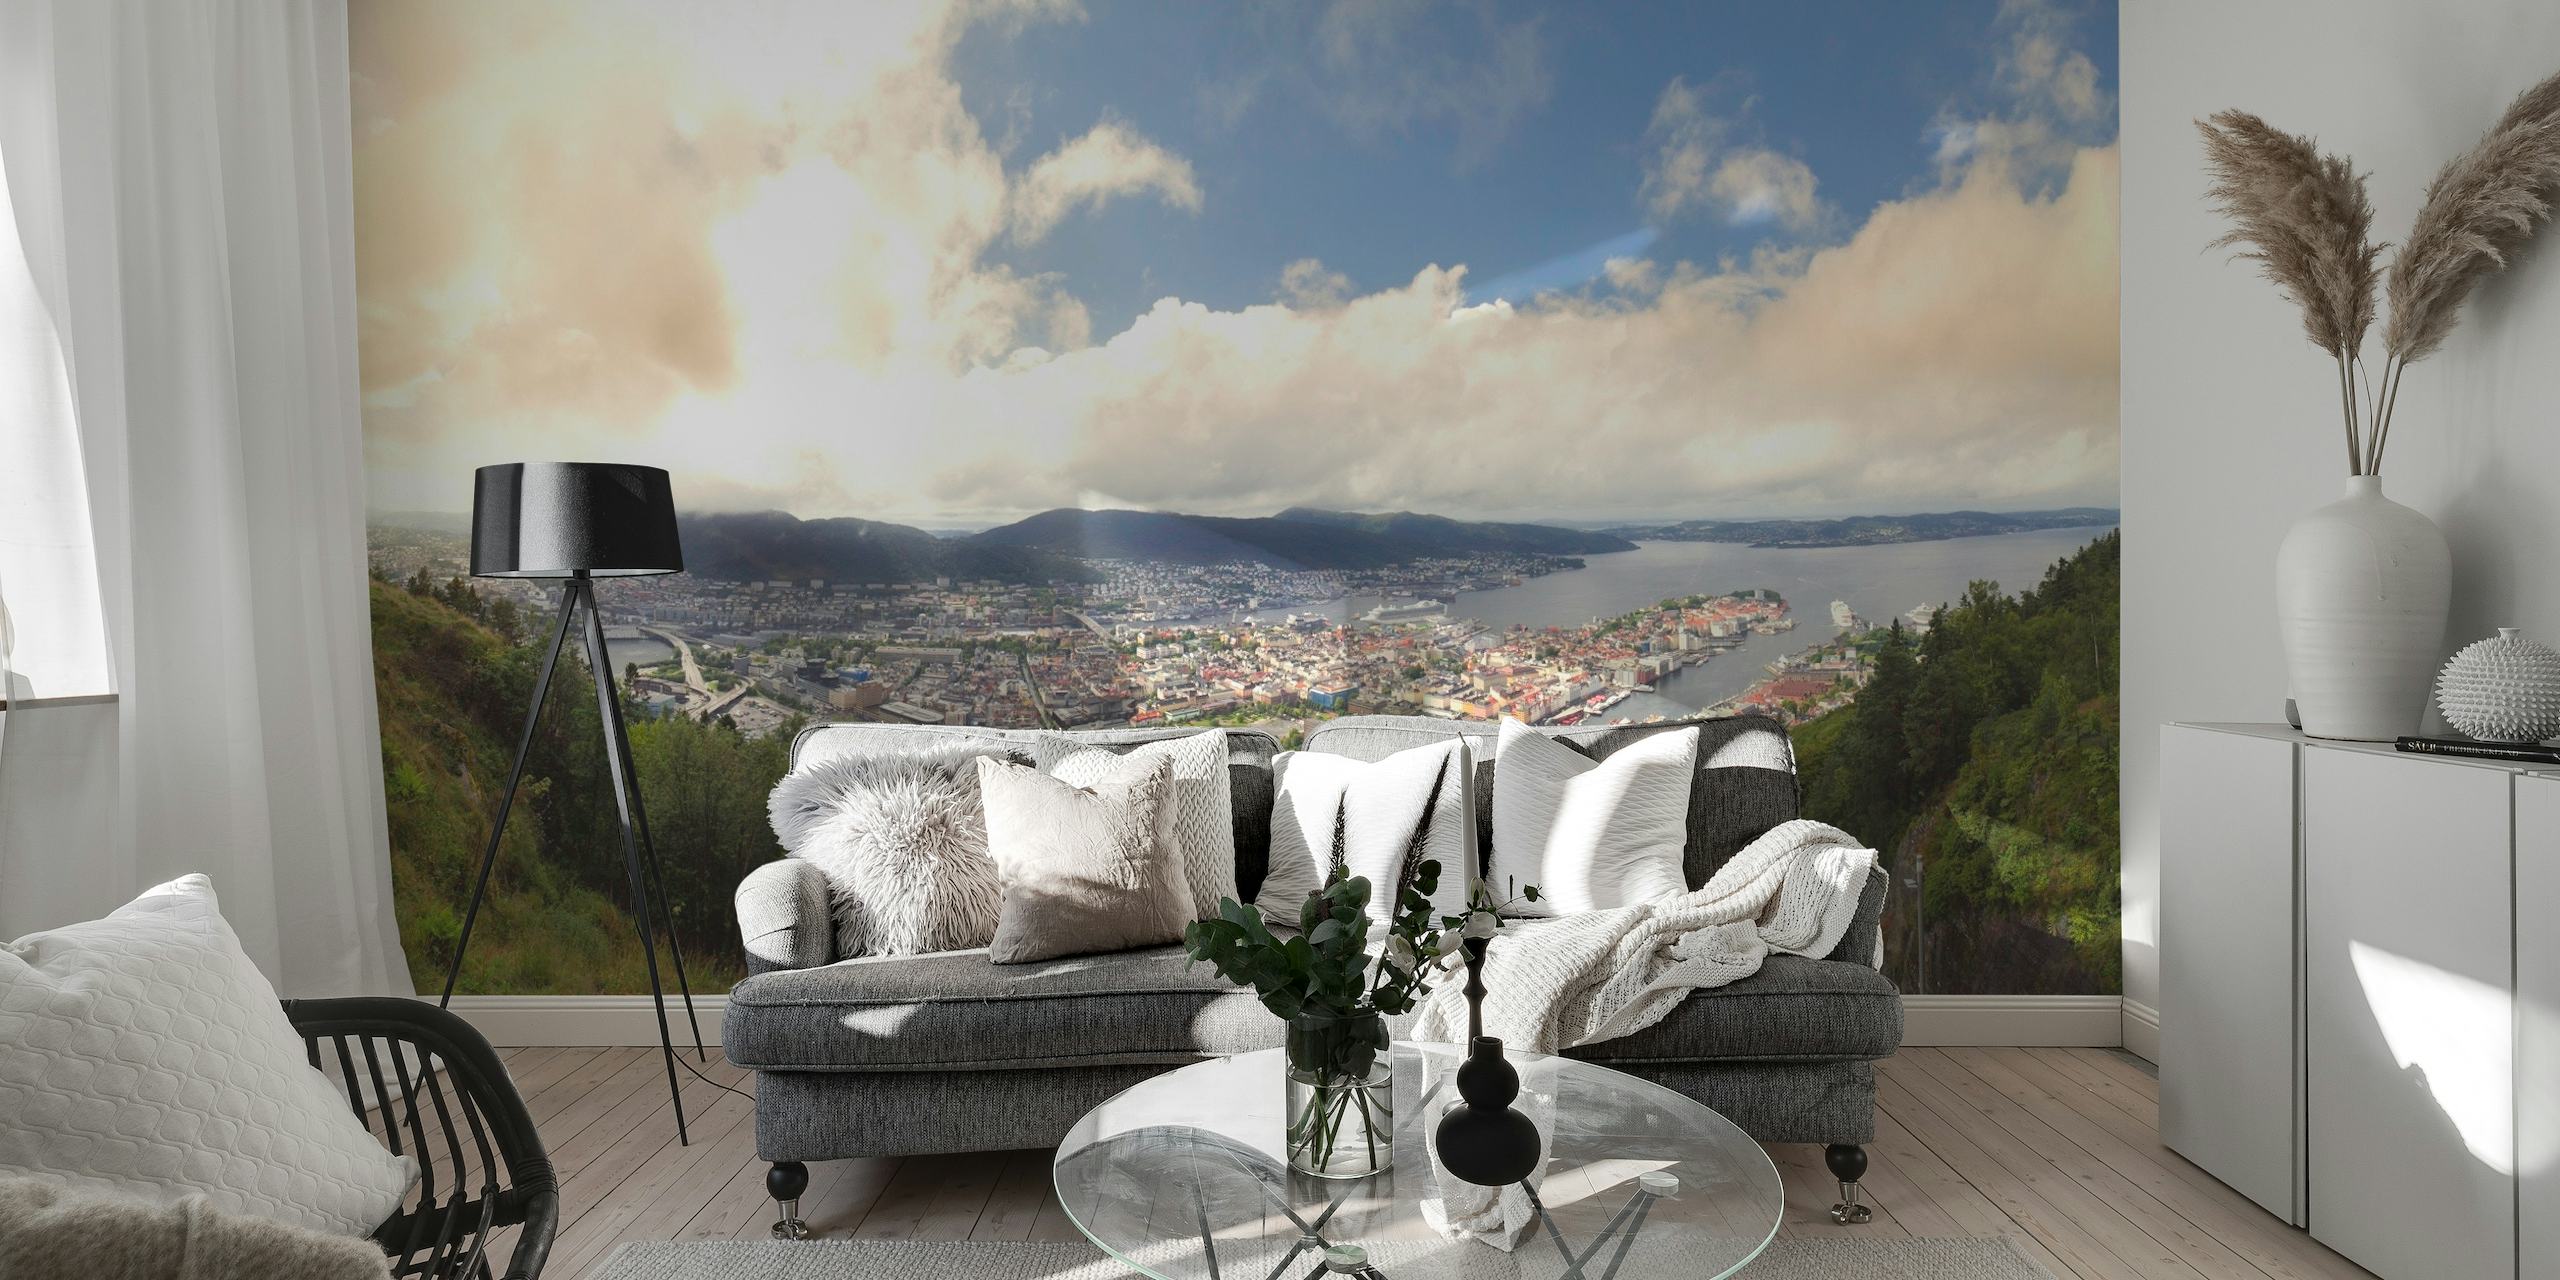 Fototapete mit Panoramablick auf die Stadt Bergen, umgeben von Bergen und Grün